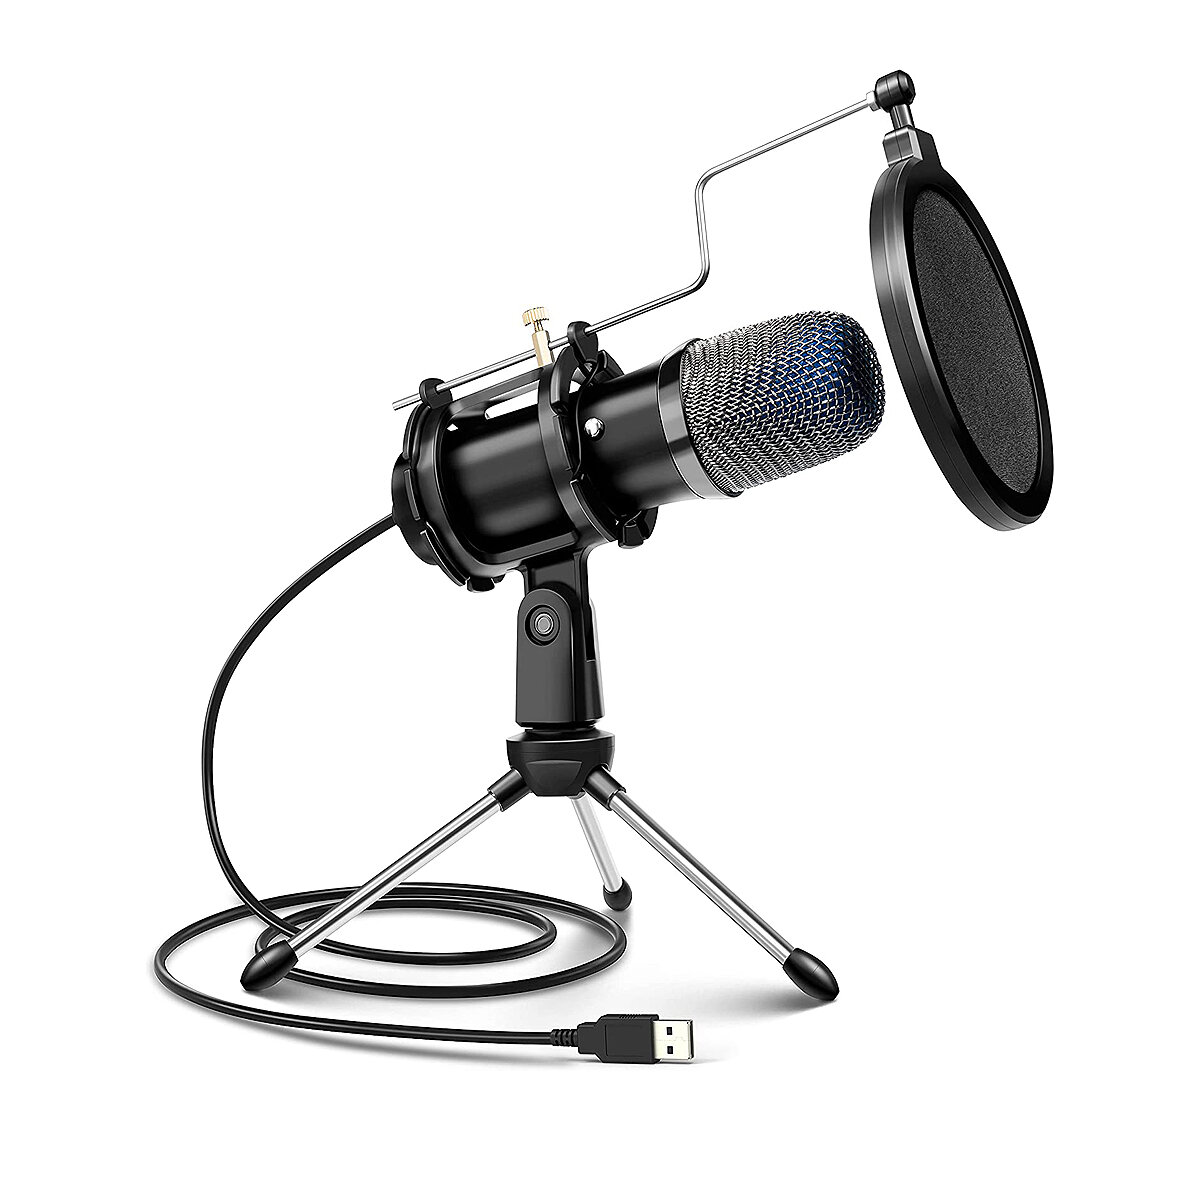 Στα 49.22 € από αποθήκη Κίνας | ELECTRIC GIANT USB Microphone Noise Reduction Smart Control Stable Stand Voice Recording Microphone for PC